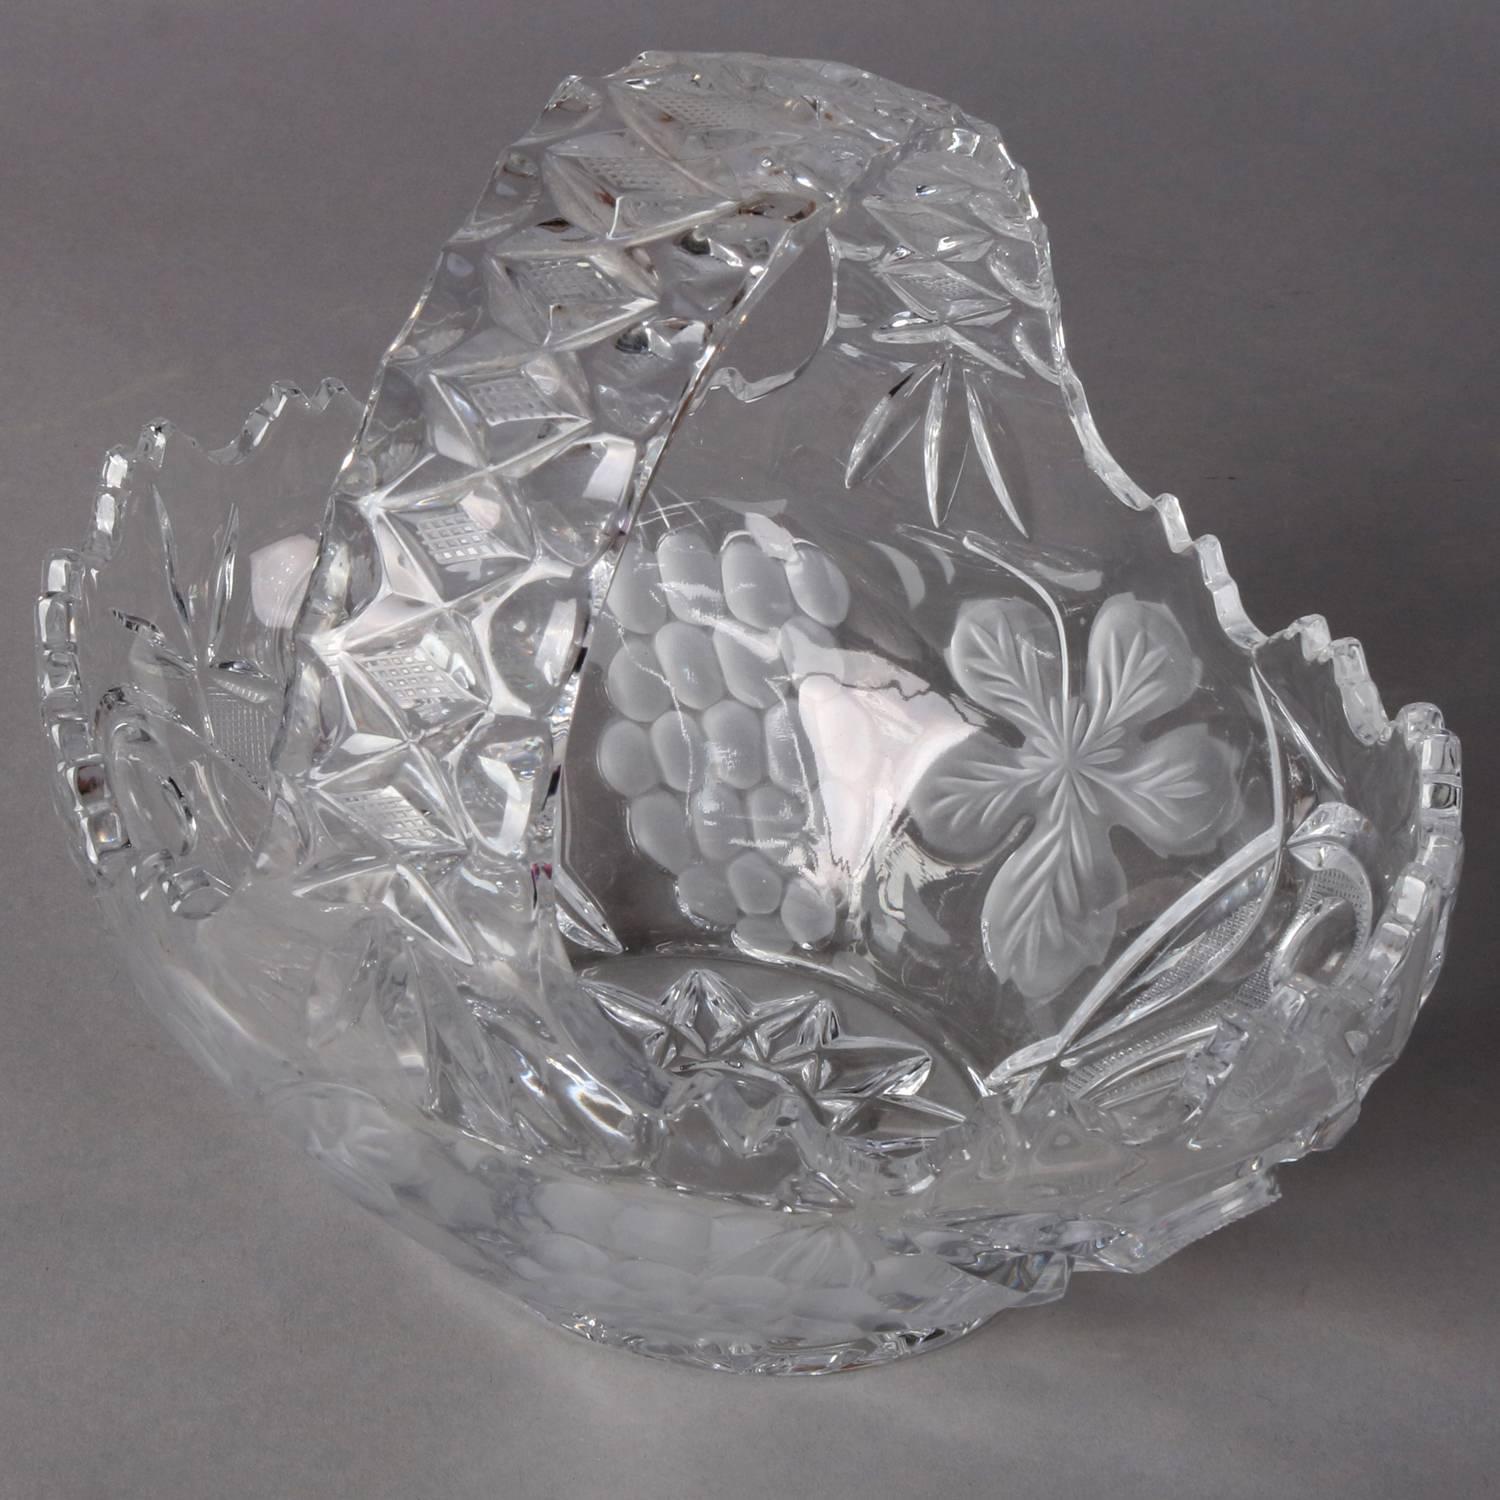 Korb aus geschliffenem und gepresstem Kristall der Hawkes School mit geätztem Trauben- und Blumendekor, 20. Jahrhundert.


Maße: 9